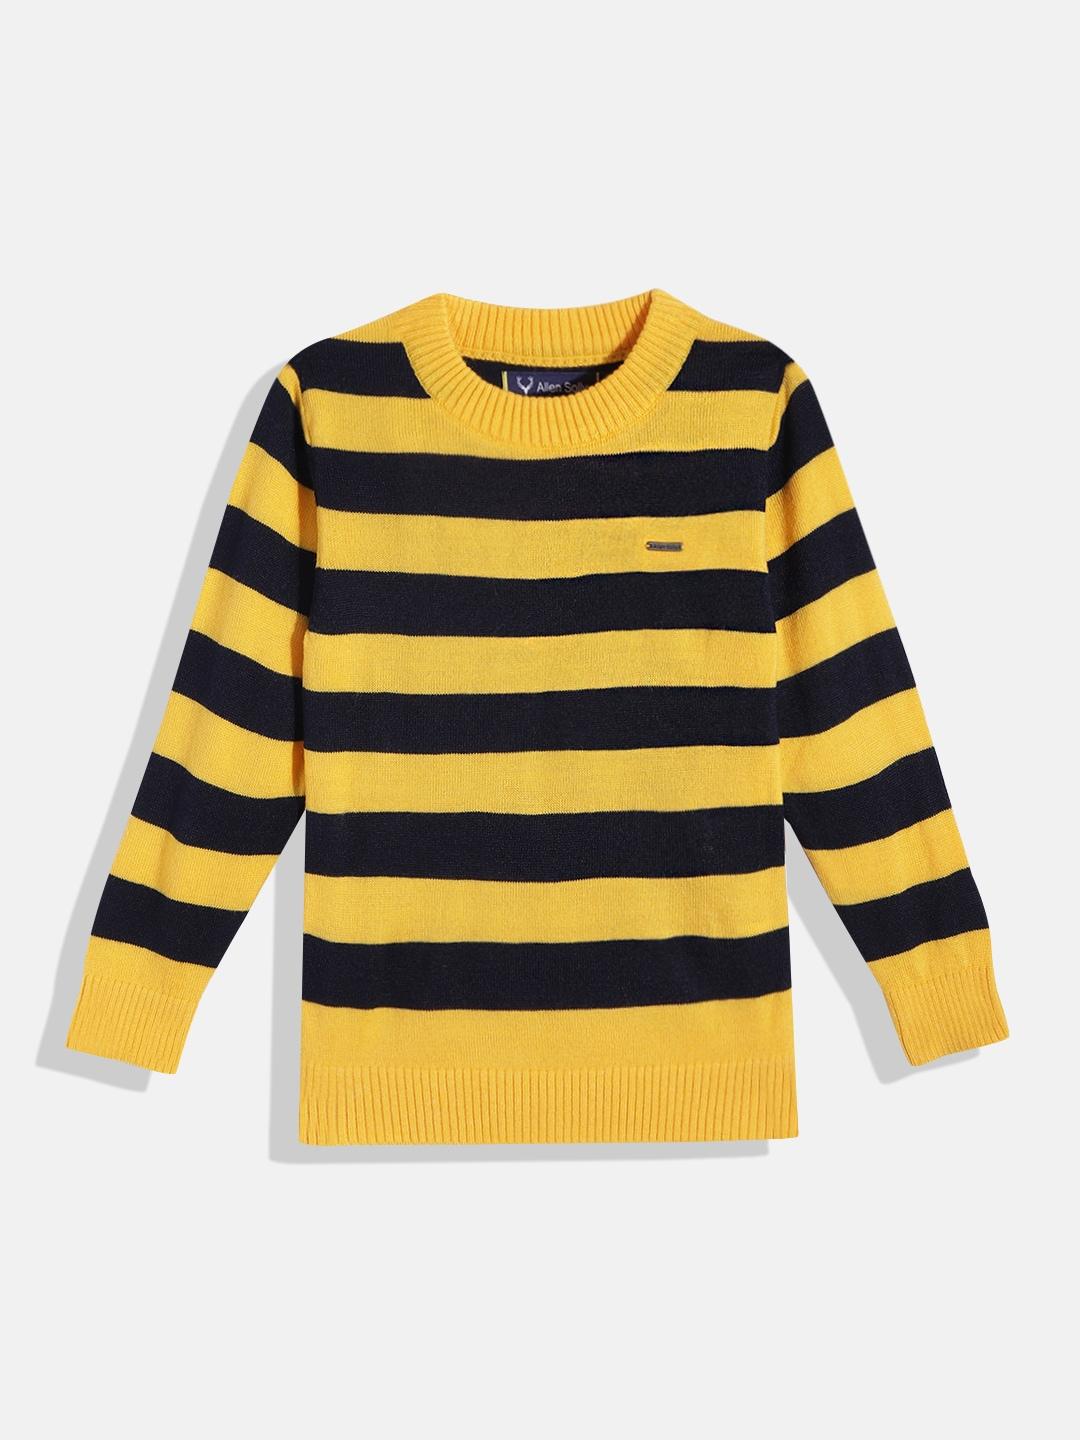 allen-solly-junior-boys-mustard-yellow-&-navy-blue-striped-pullover